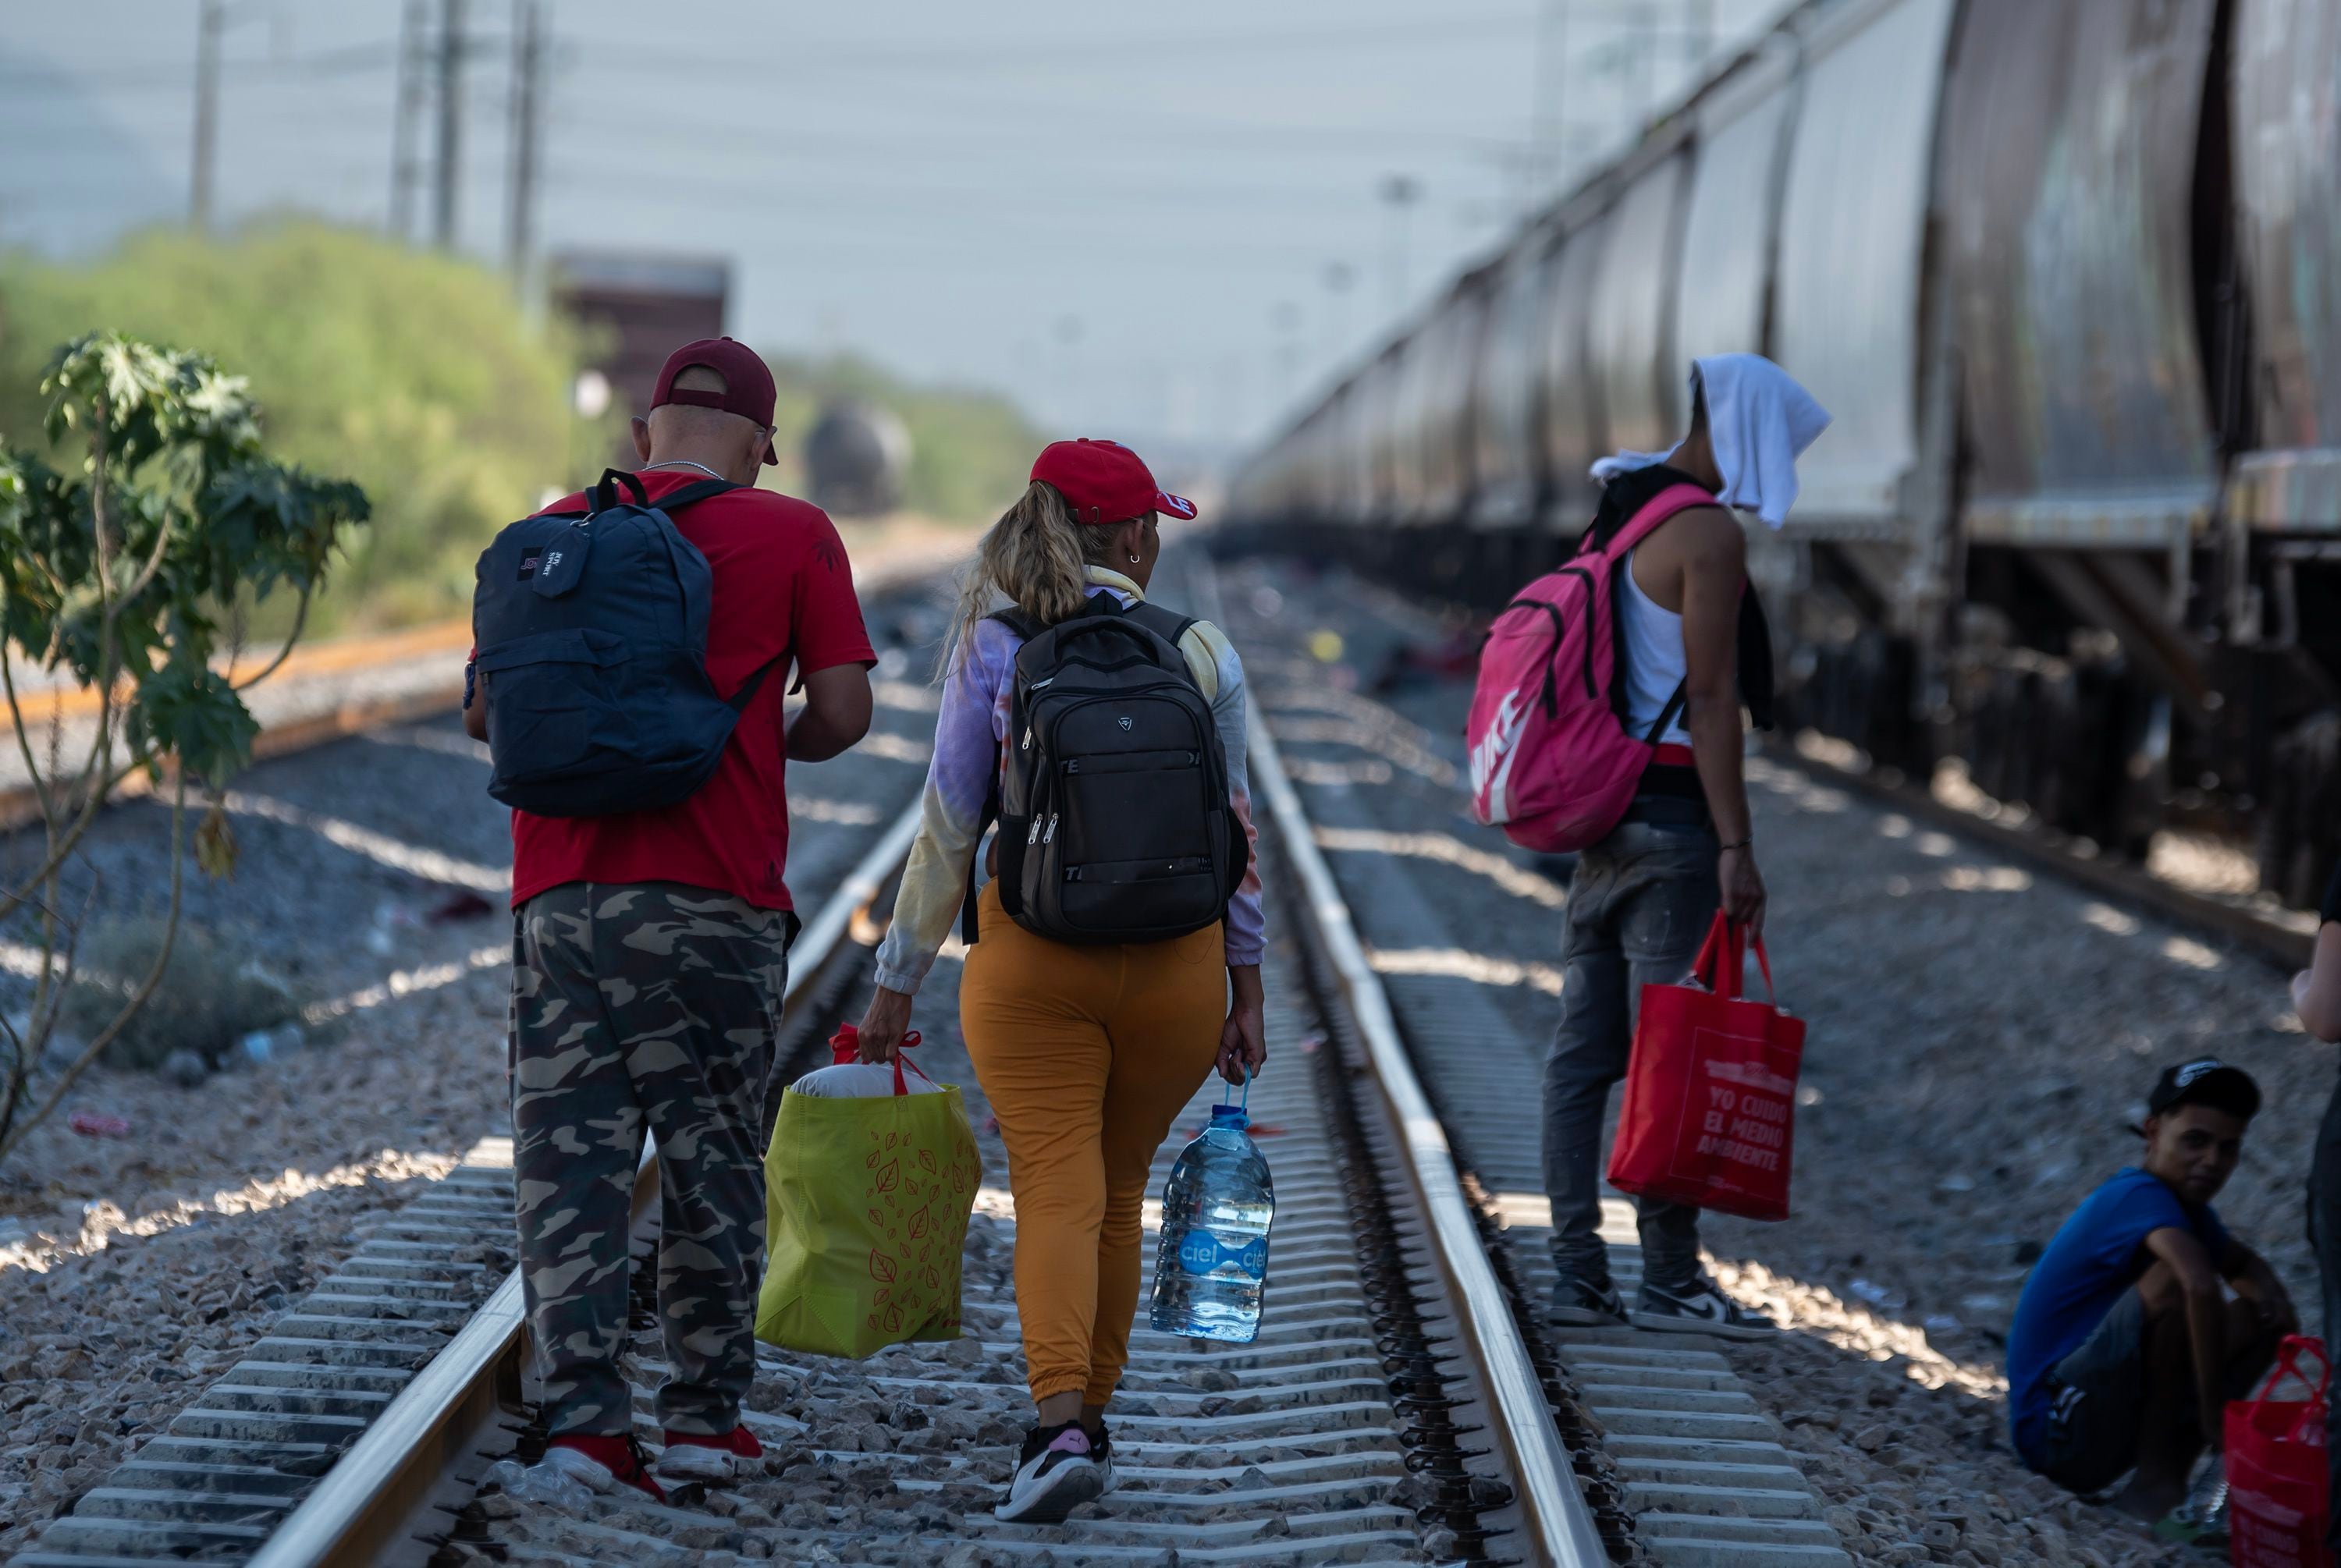 Migrantes caminan por las vías del tren en su intención de llegar a la frontera con Estados Unidos.
EFE/Miguel Sierra
